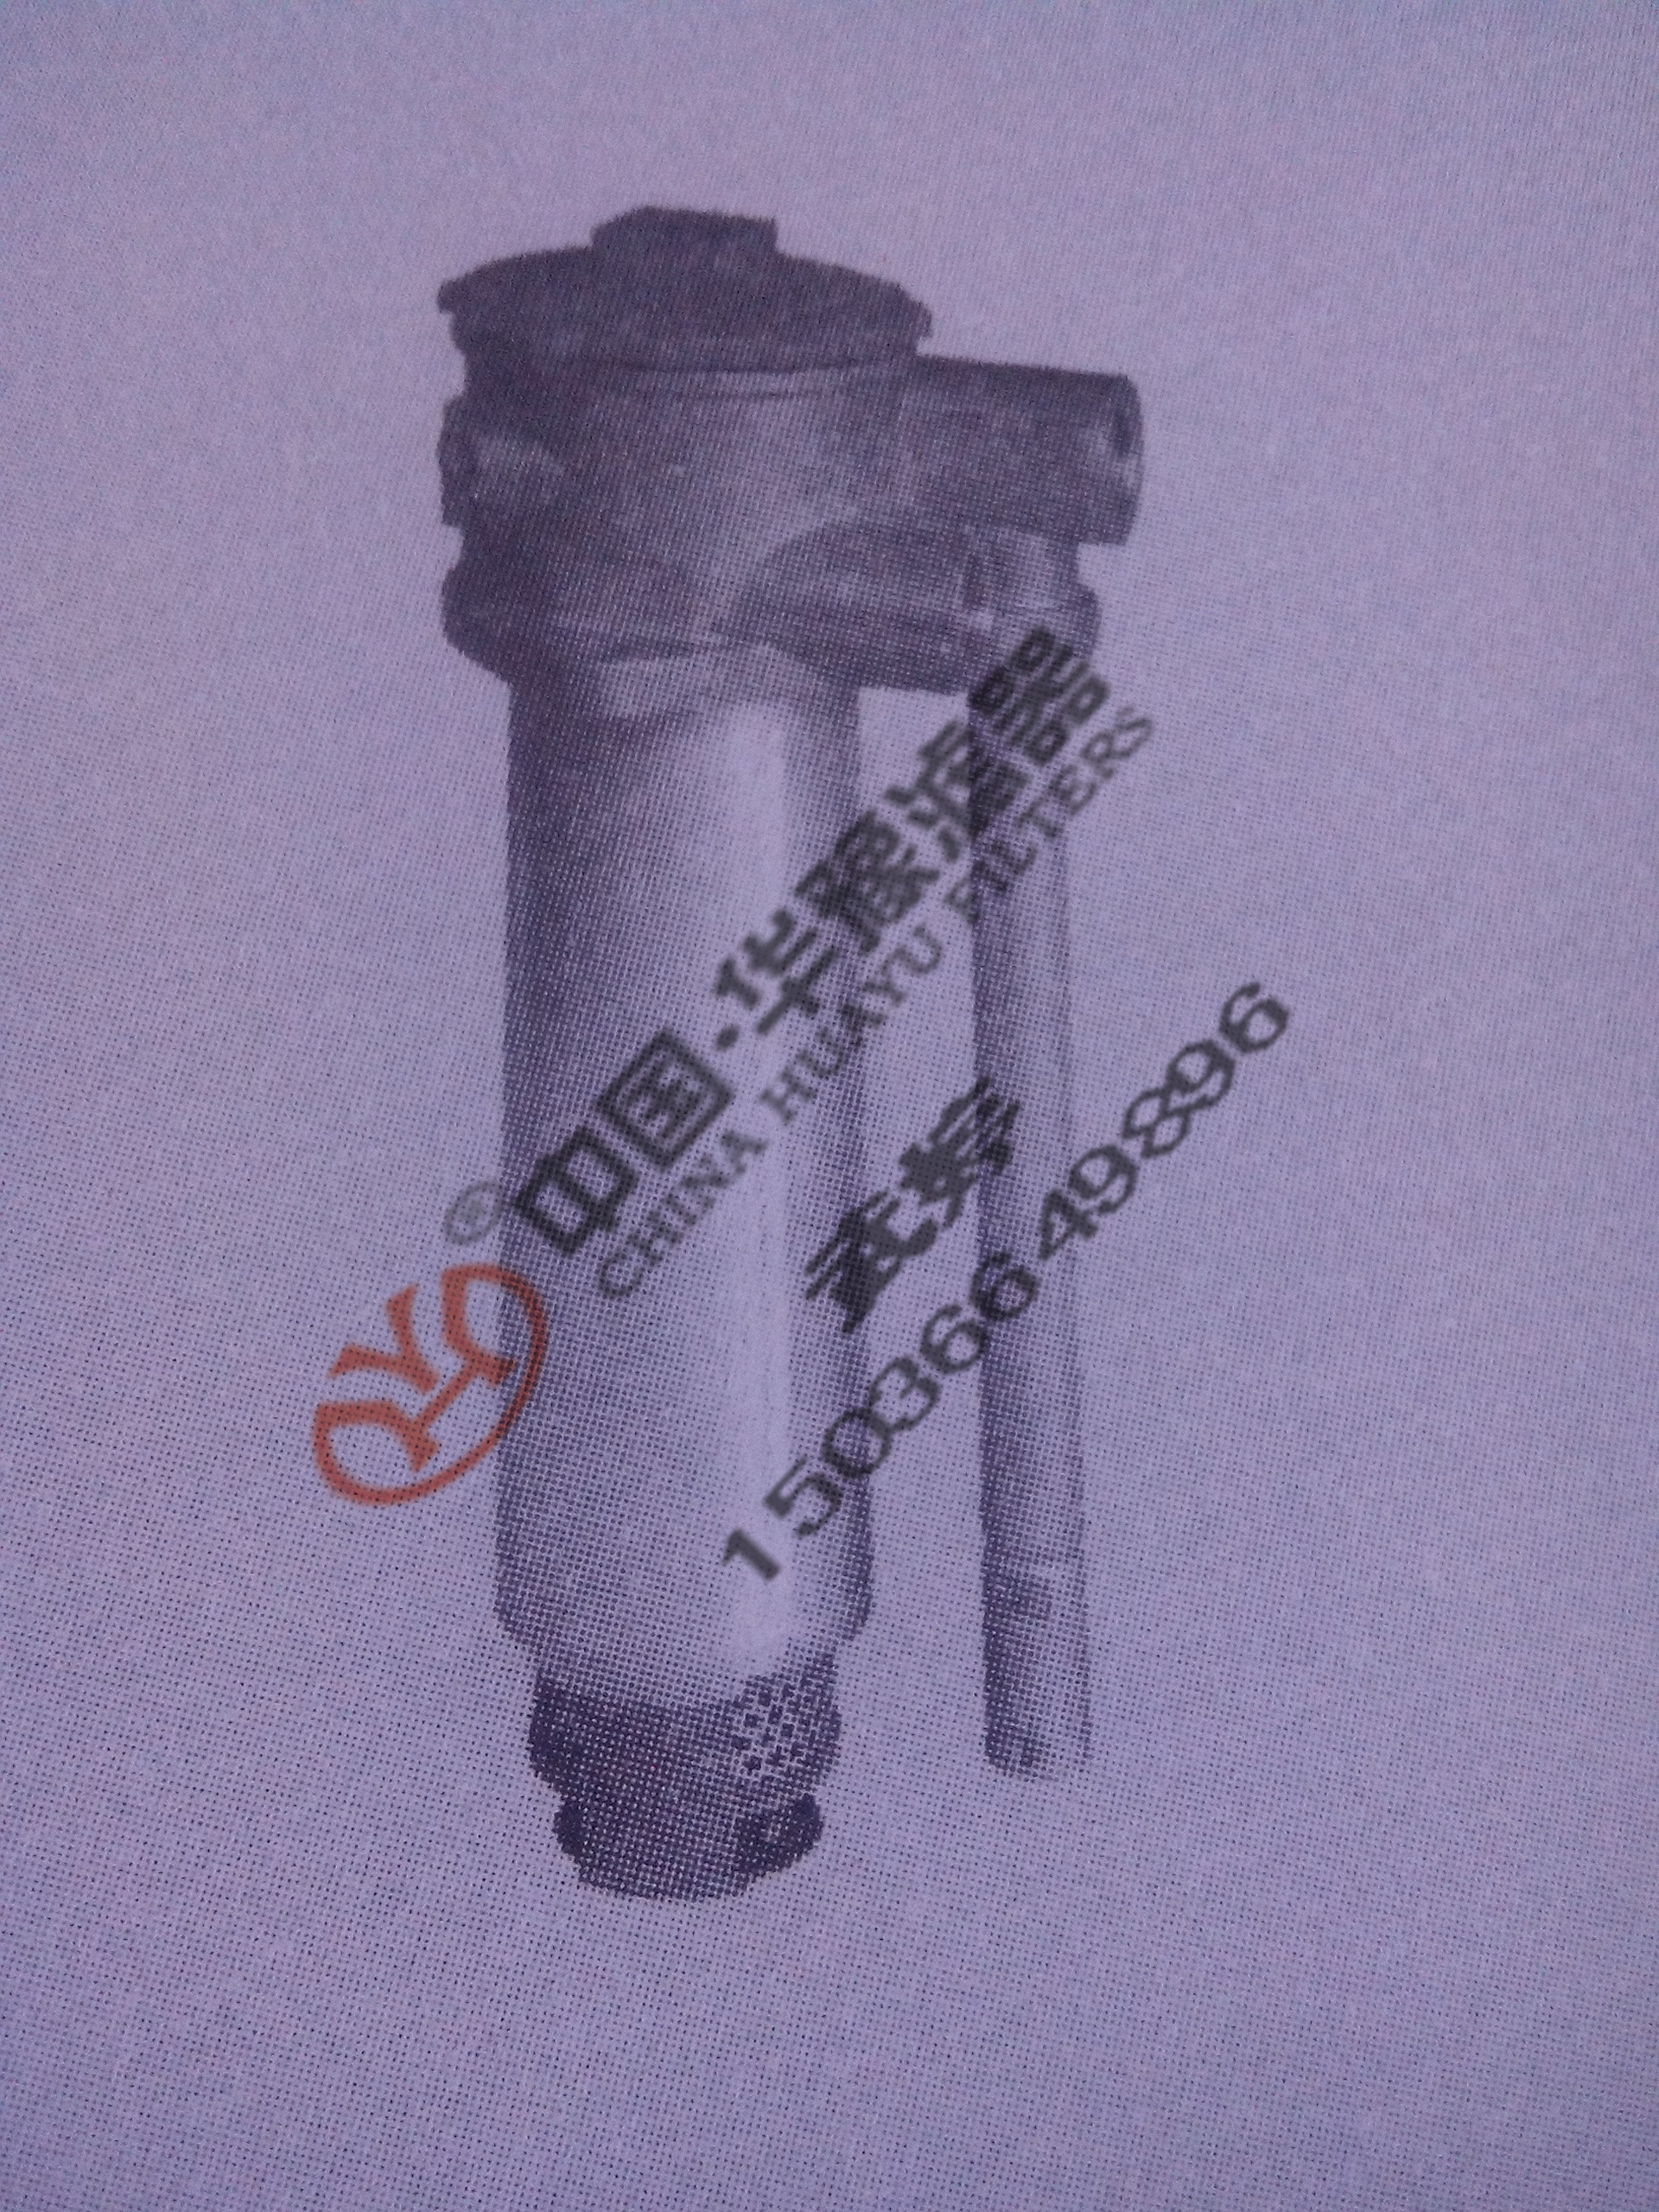 PRS150FD1吸油管路過濾器